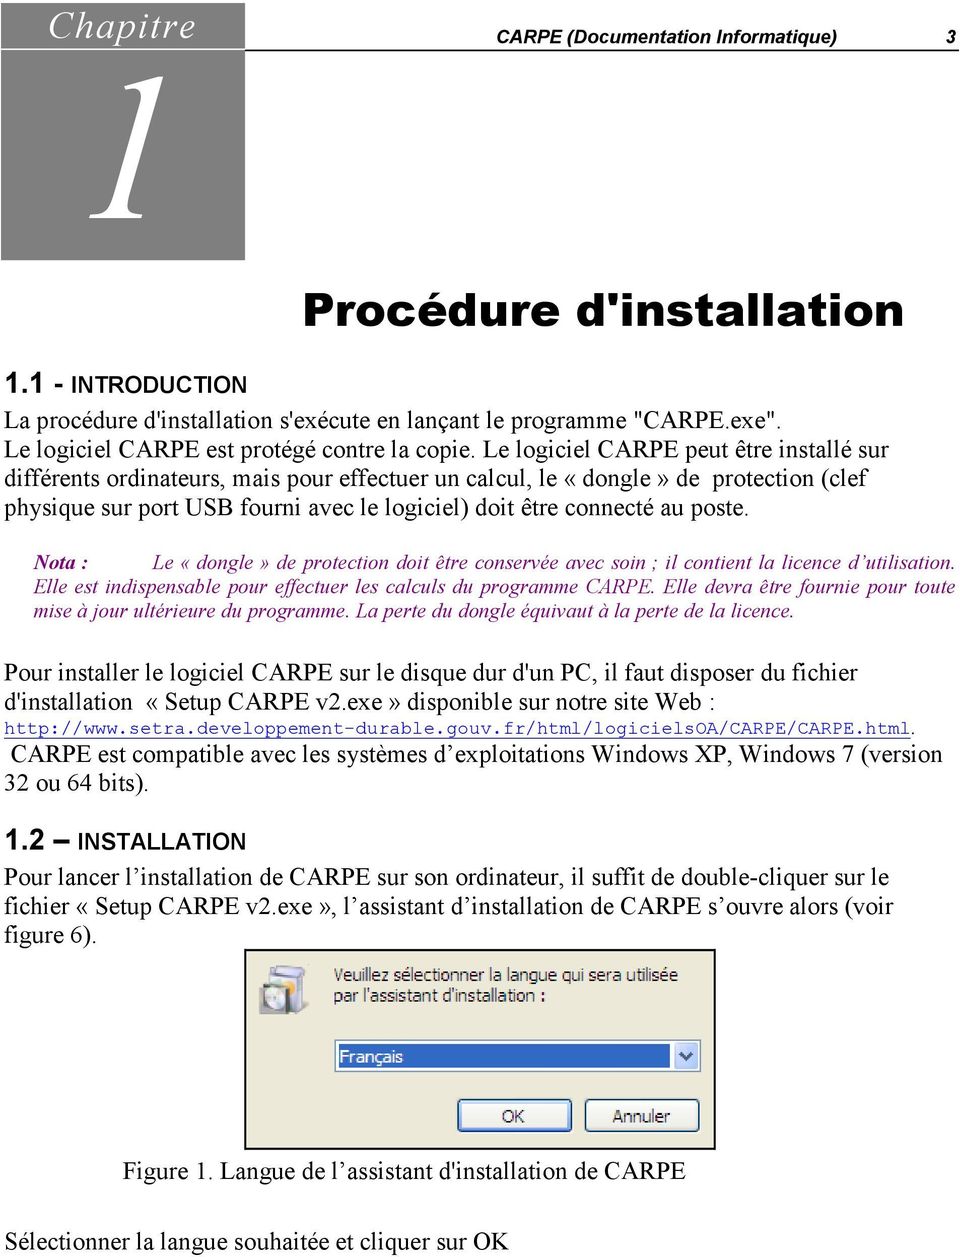 Le logiciel CARPE peut être installé sur différents ordinateurs, mais pour effectuer un calcul, le «dongle» de protection (clef physique sur port USB fourni avec le logiciel) doit être connecté au